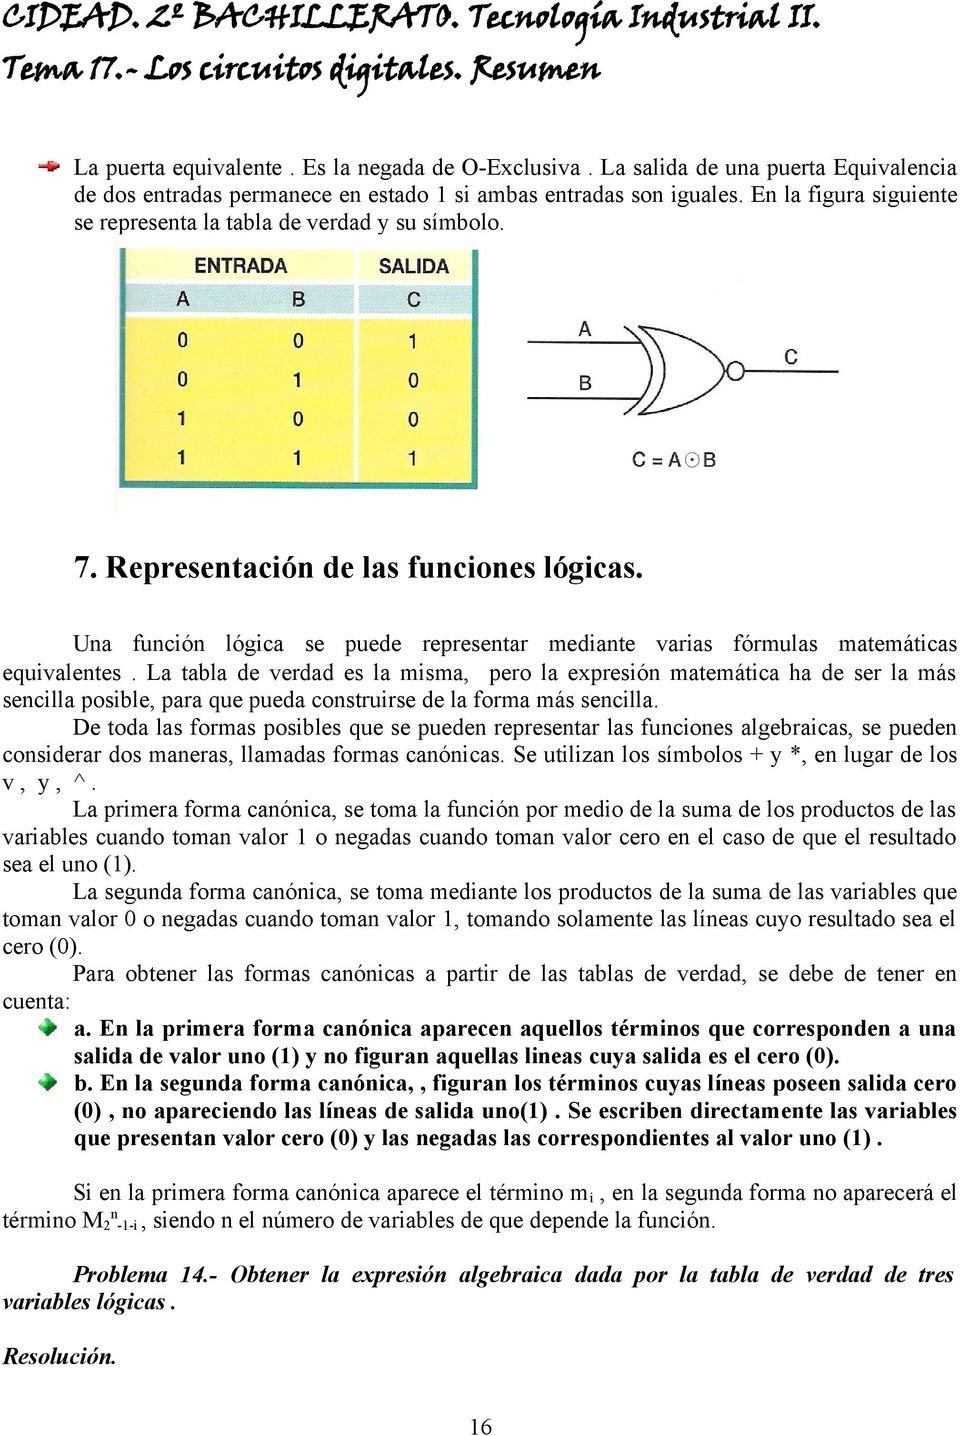 Una función lógica se puede representar mediante varias fórmulas matemáticas equivalentes.